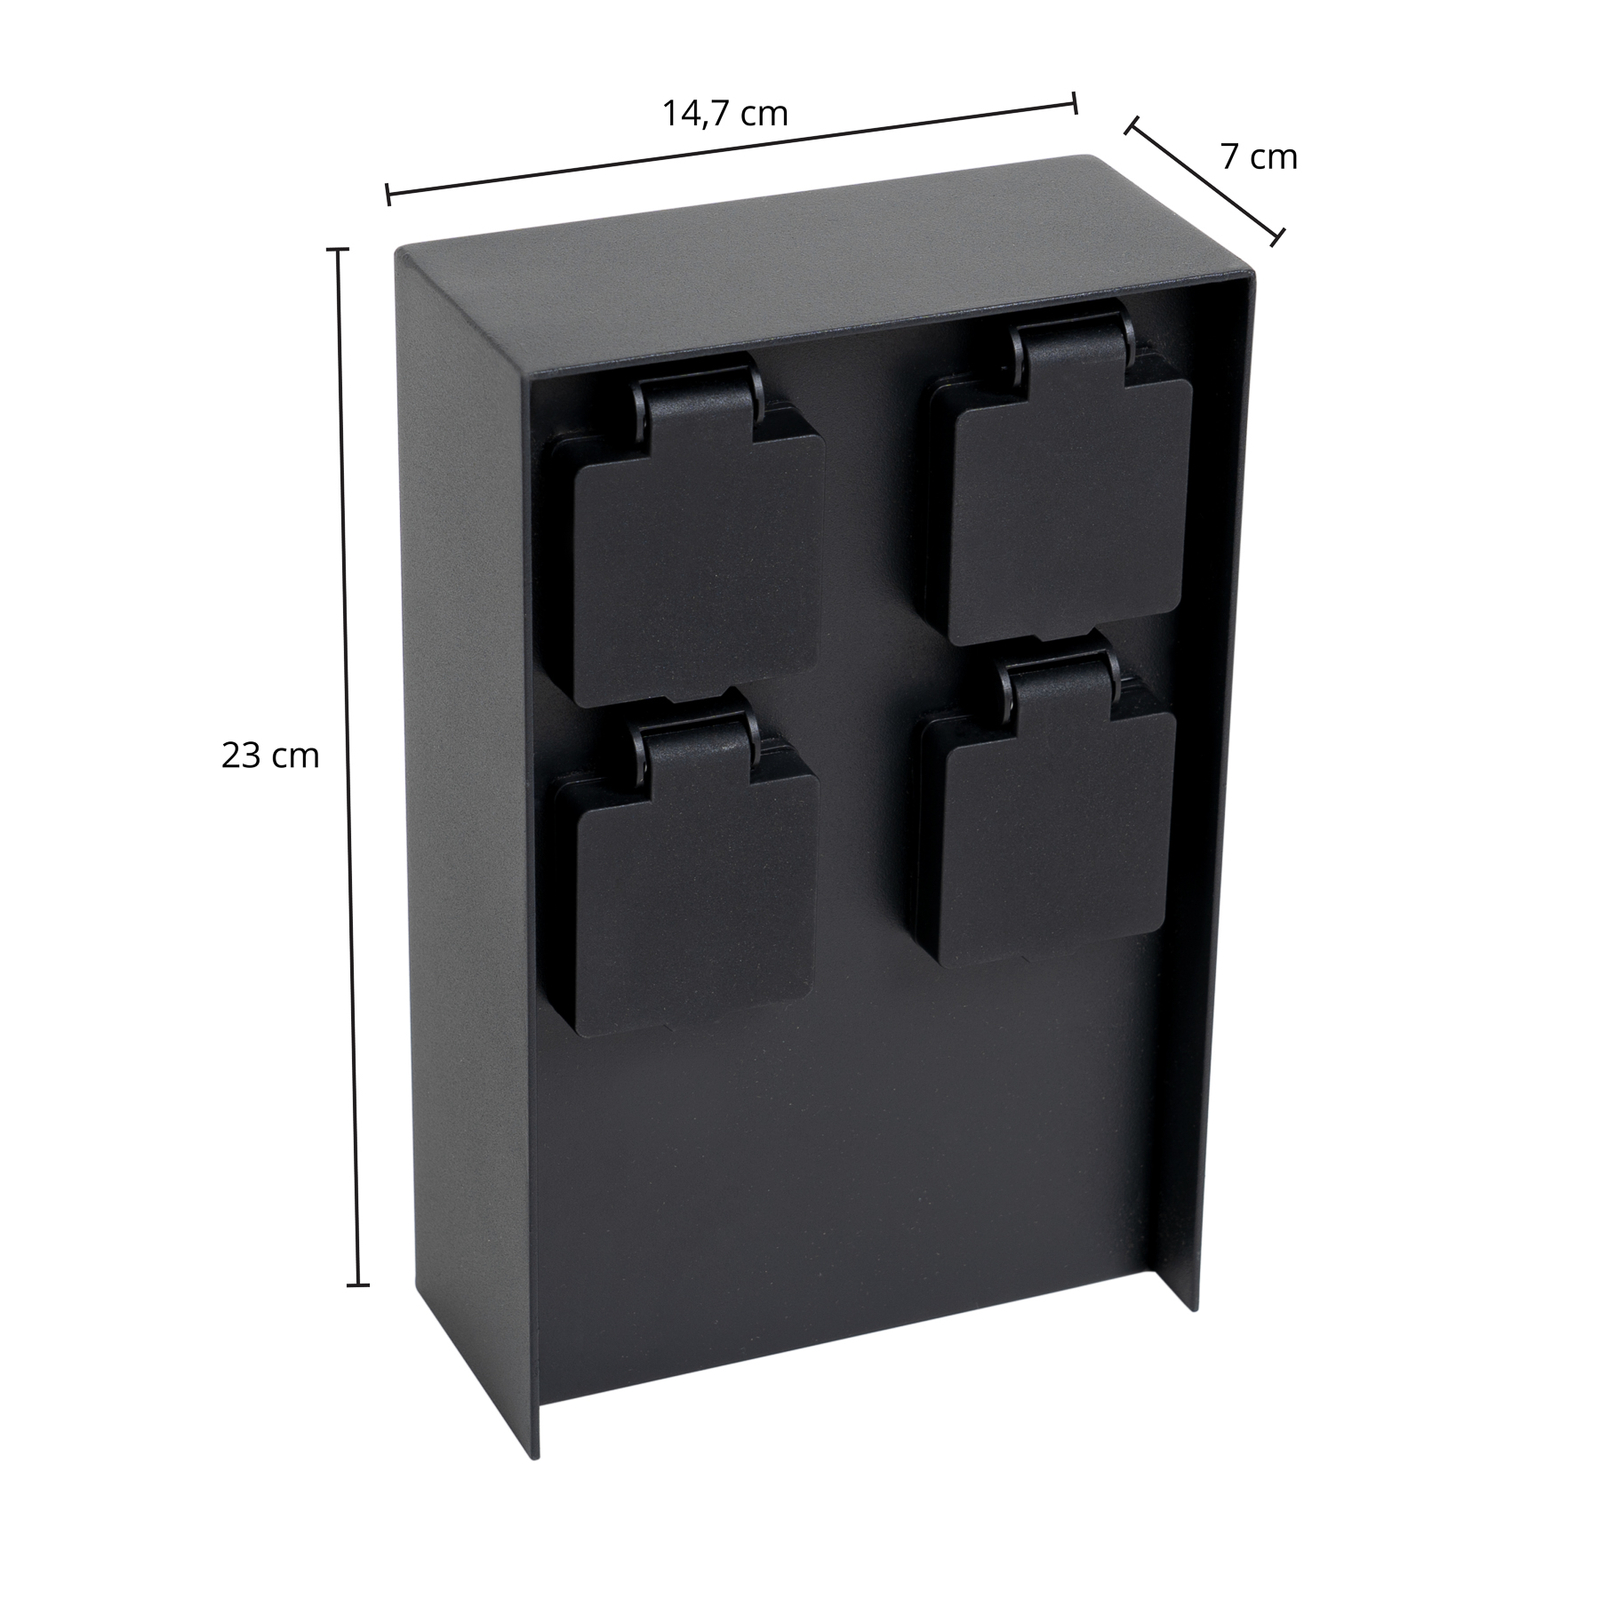 Energetický stĺp Prios Foranda, 4 kusy, čierny, 23 cm